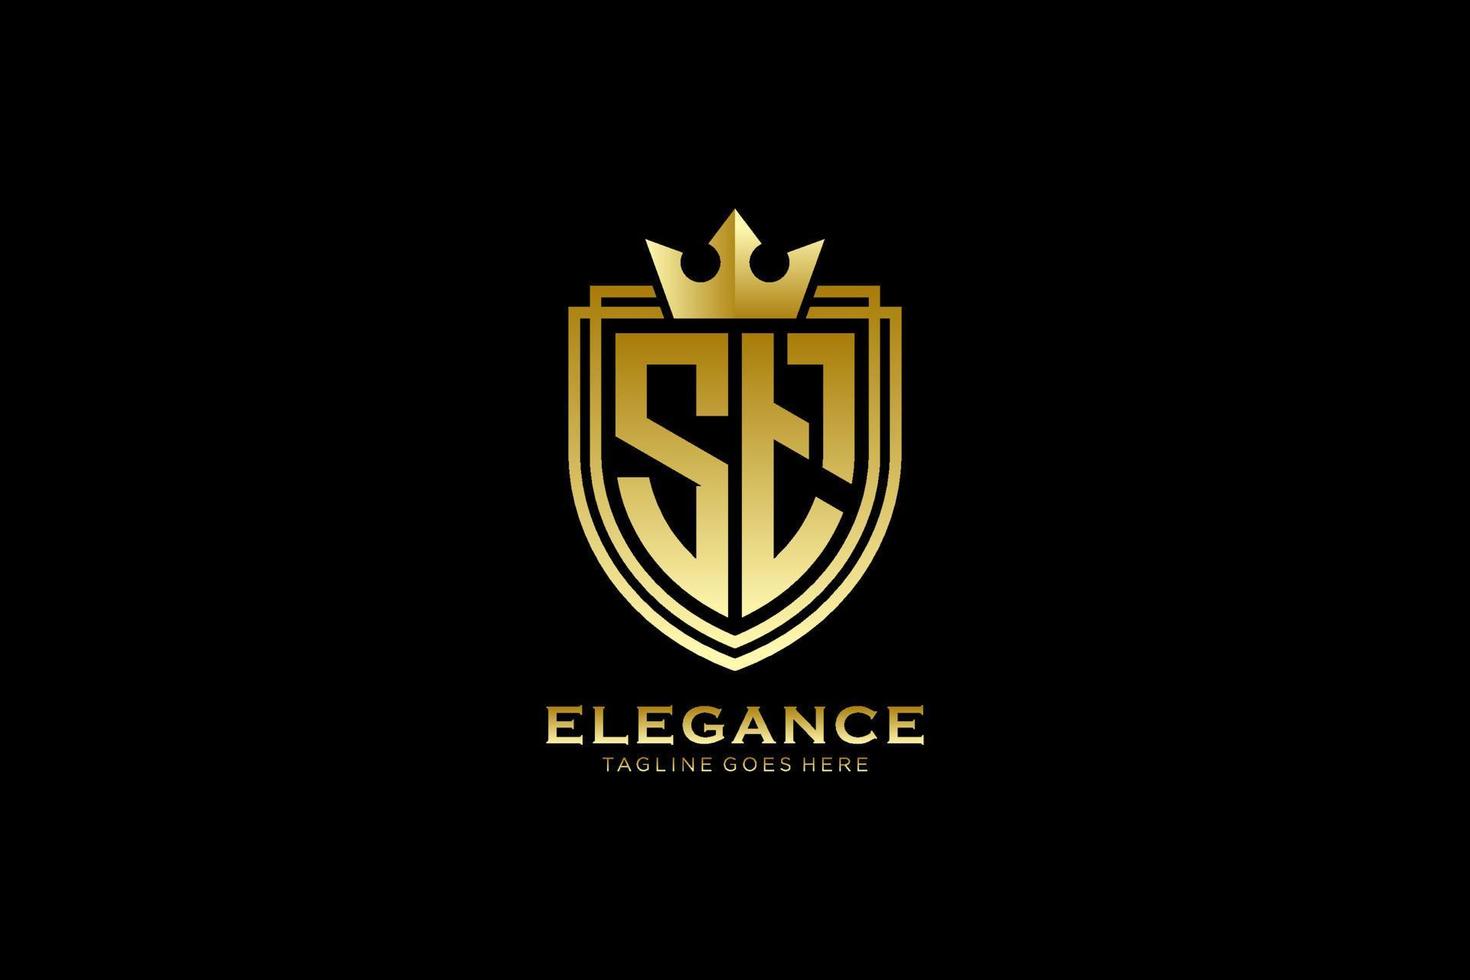 logotipo de monograma de lujo inicial elegante o plantilla de placa con pergaminos y corona real - perfecto para proyectos de marca de lujo vector